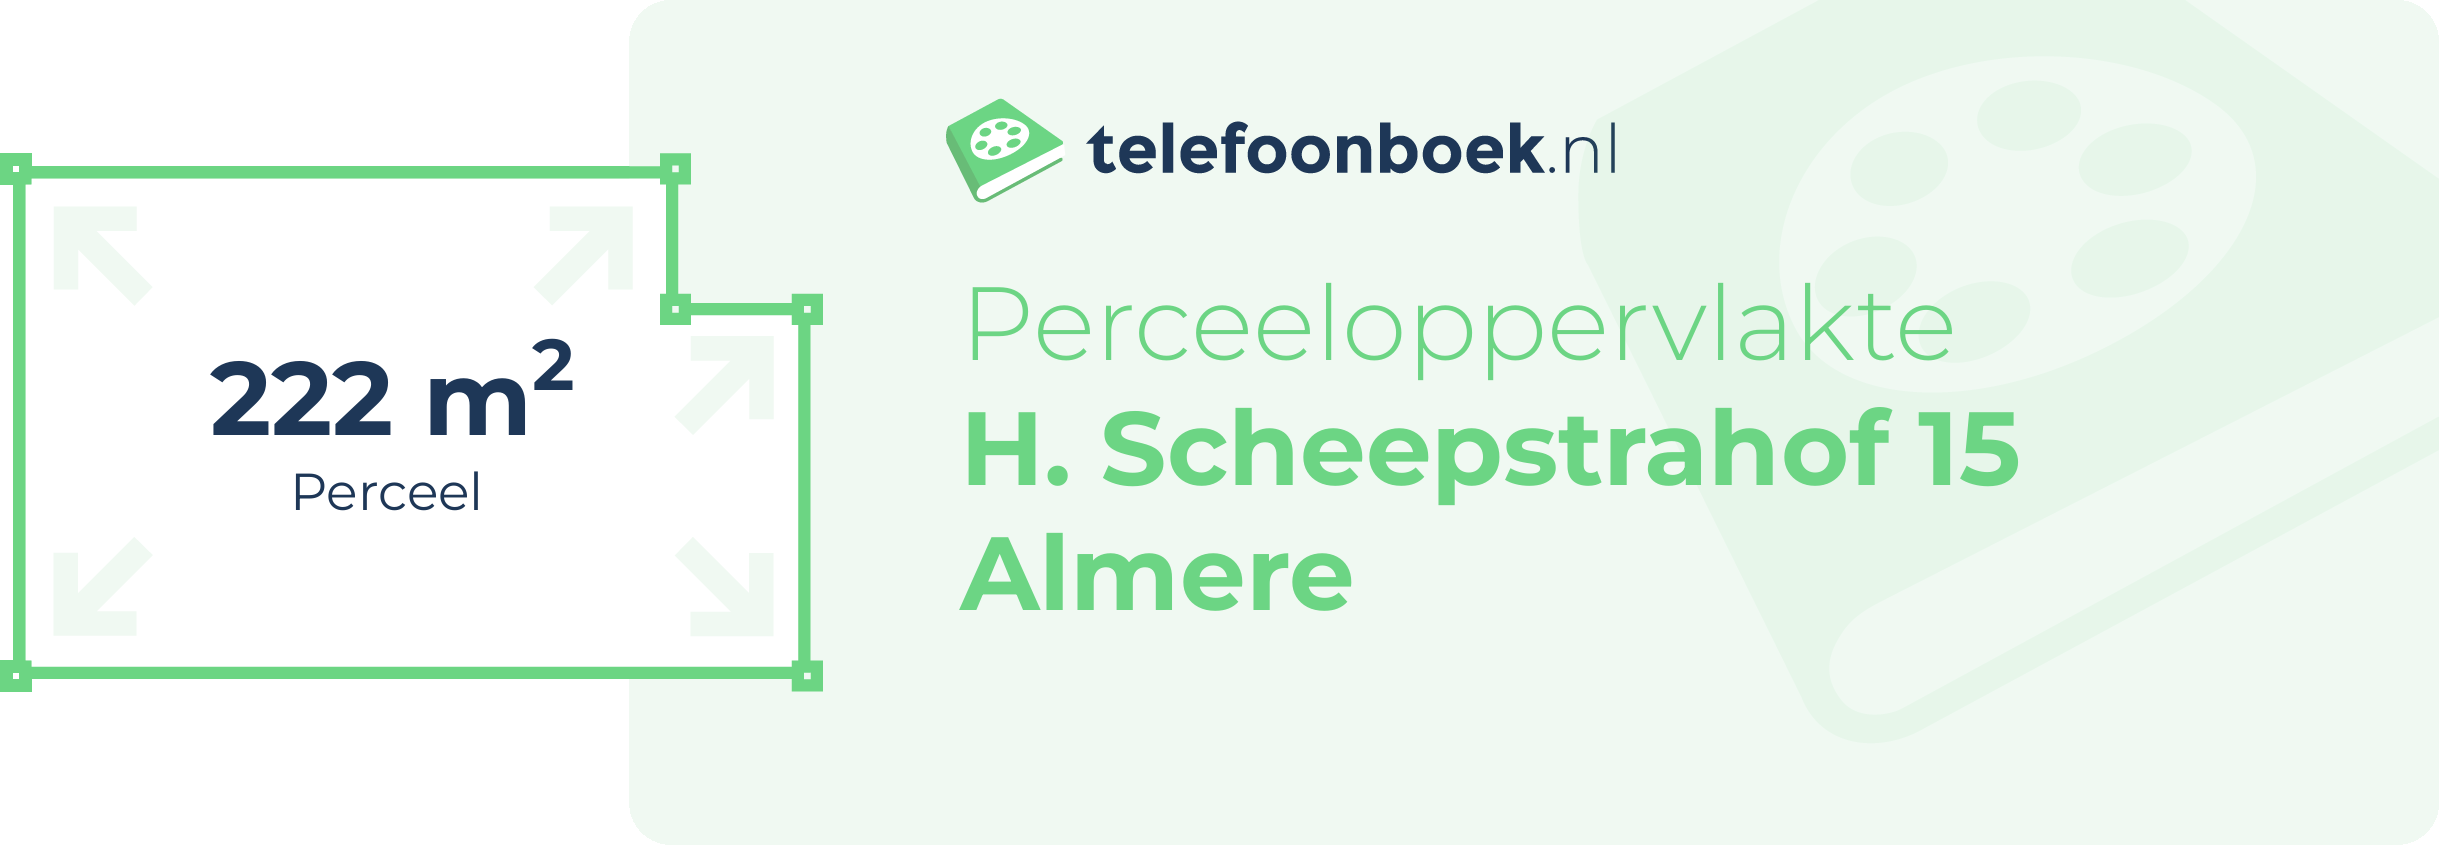 Perceeloppervlakte H. Scheepstrahof 15 Almere